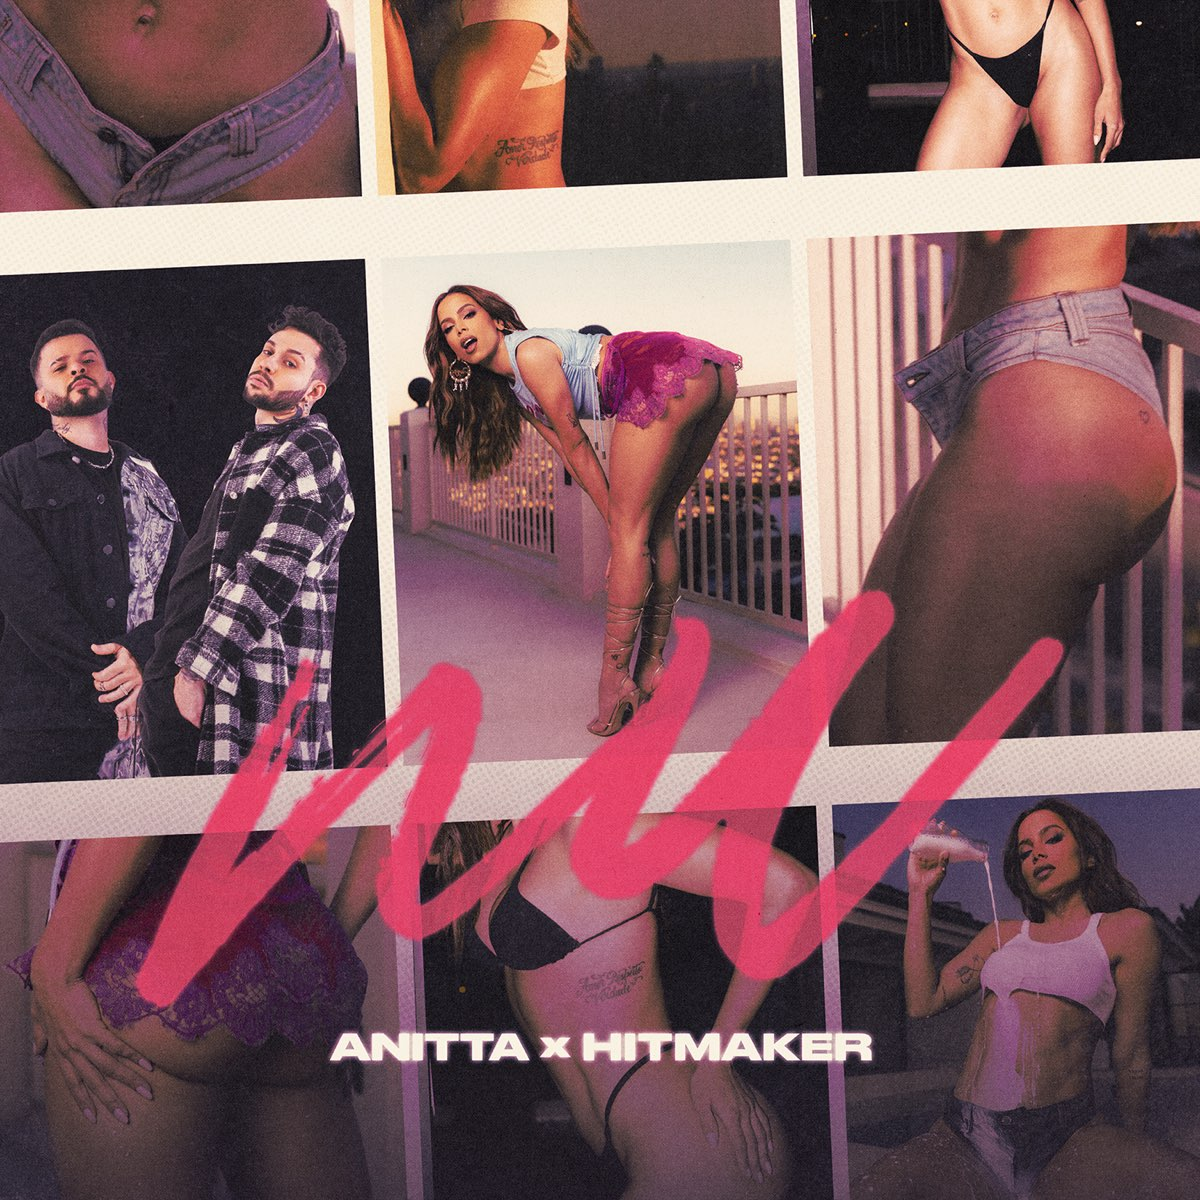 Anitta & Hitmaker NU cover artwork